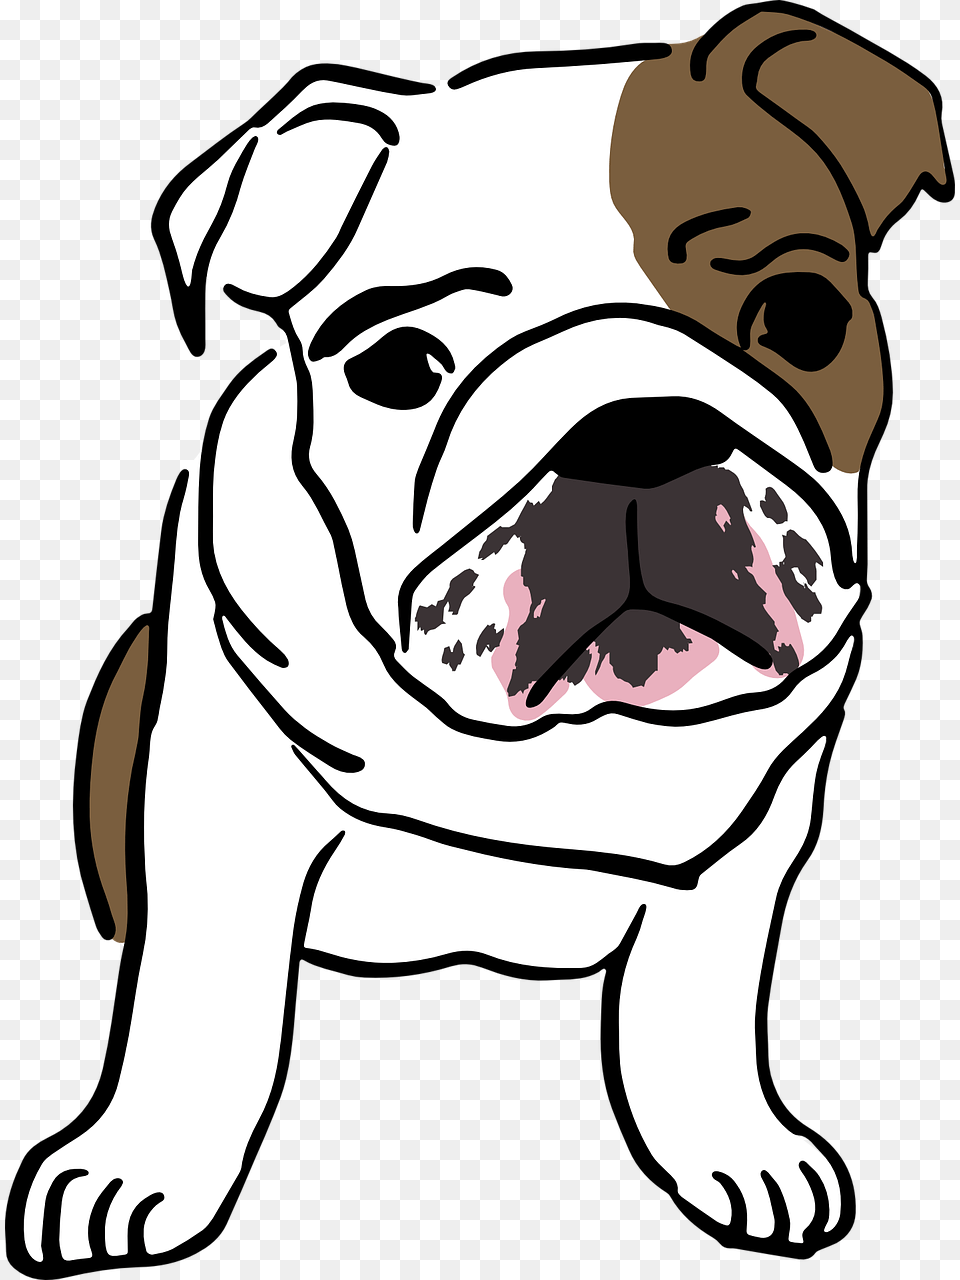 Drawing Bulldogs English Bulldog Desenho De Bulldog Ingles, Animal, Mammal, Pet, Dog Png